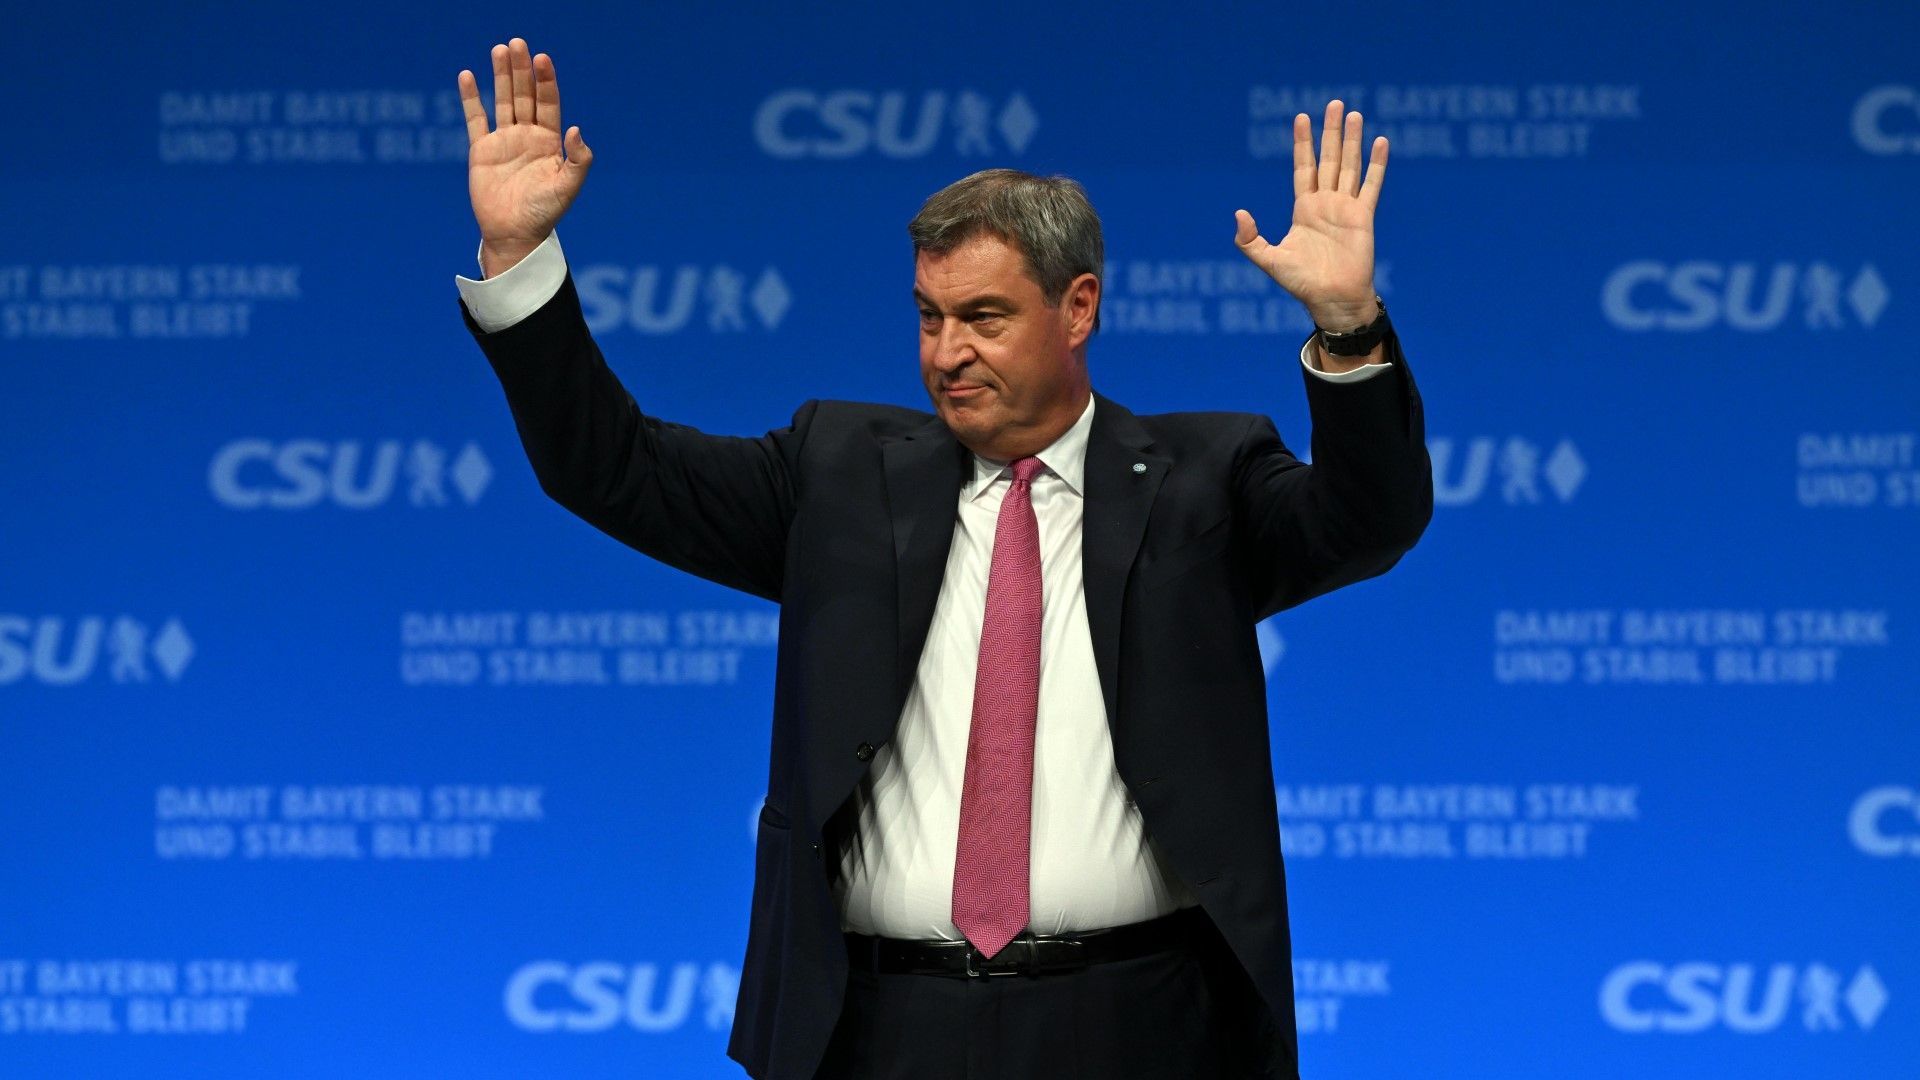 Söder als CSU-Chef wiedergewählt